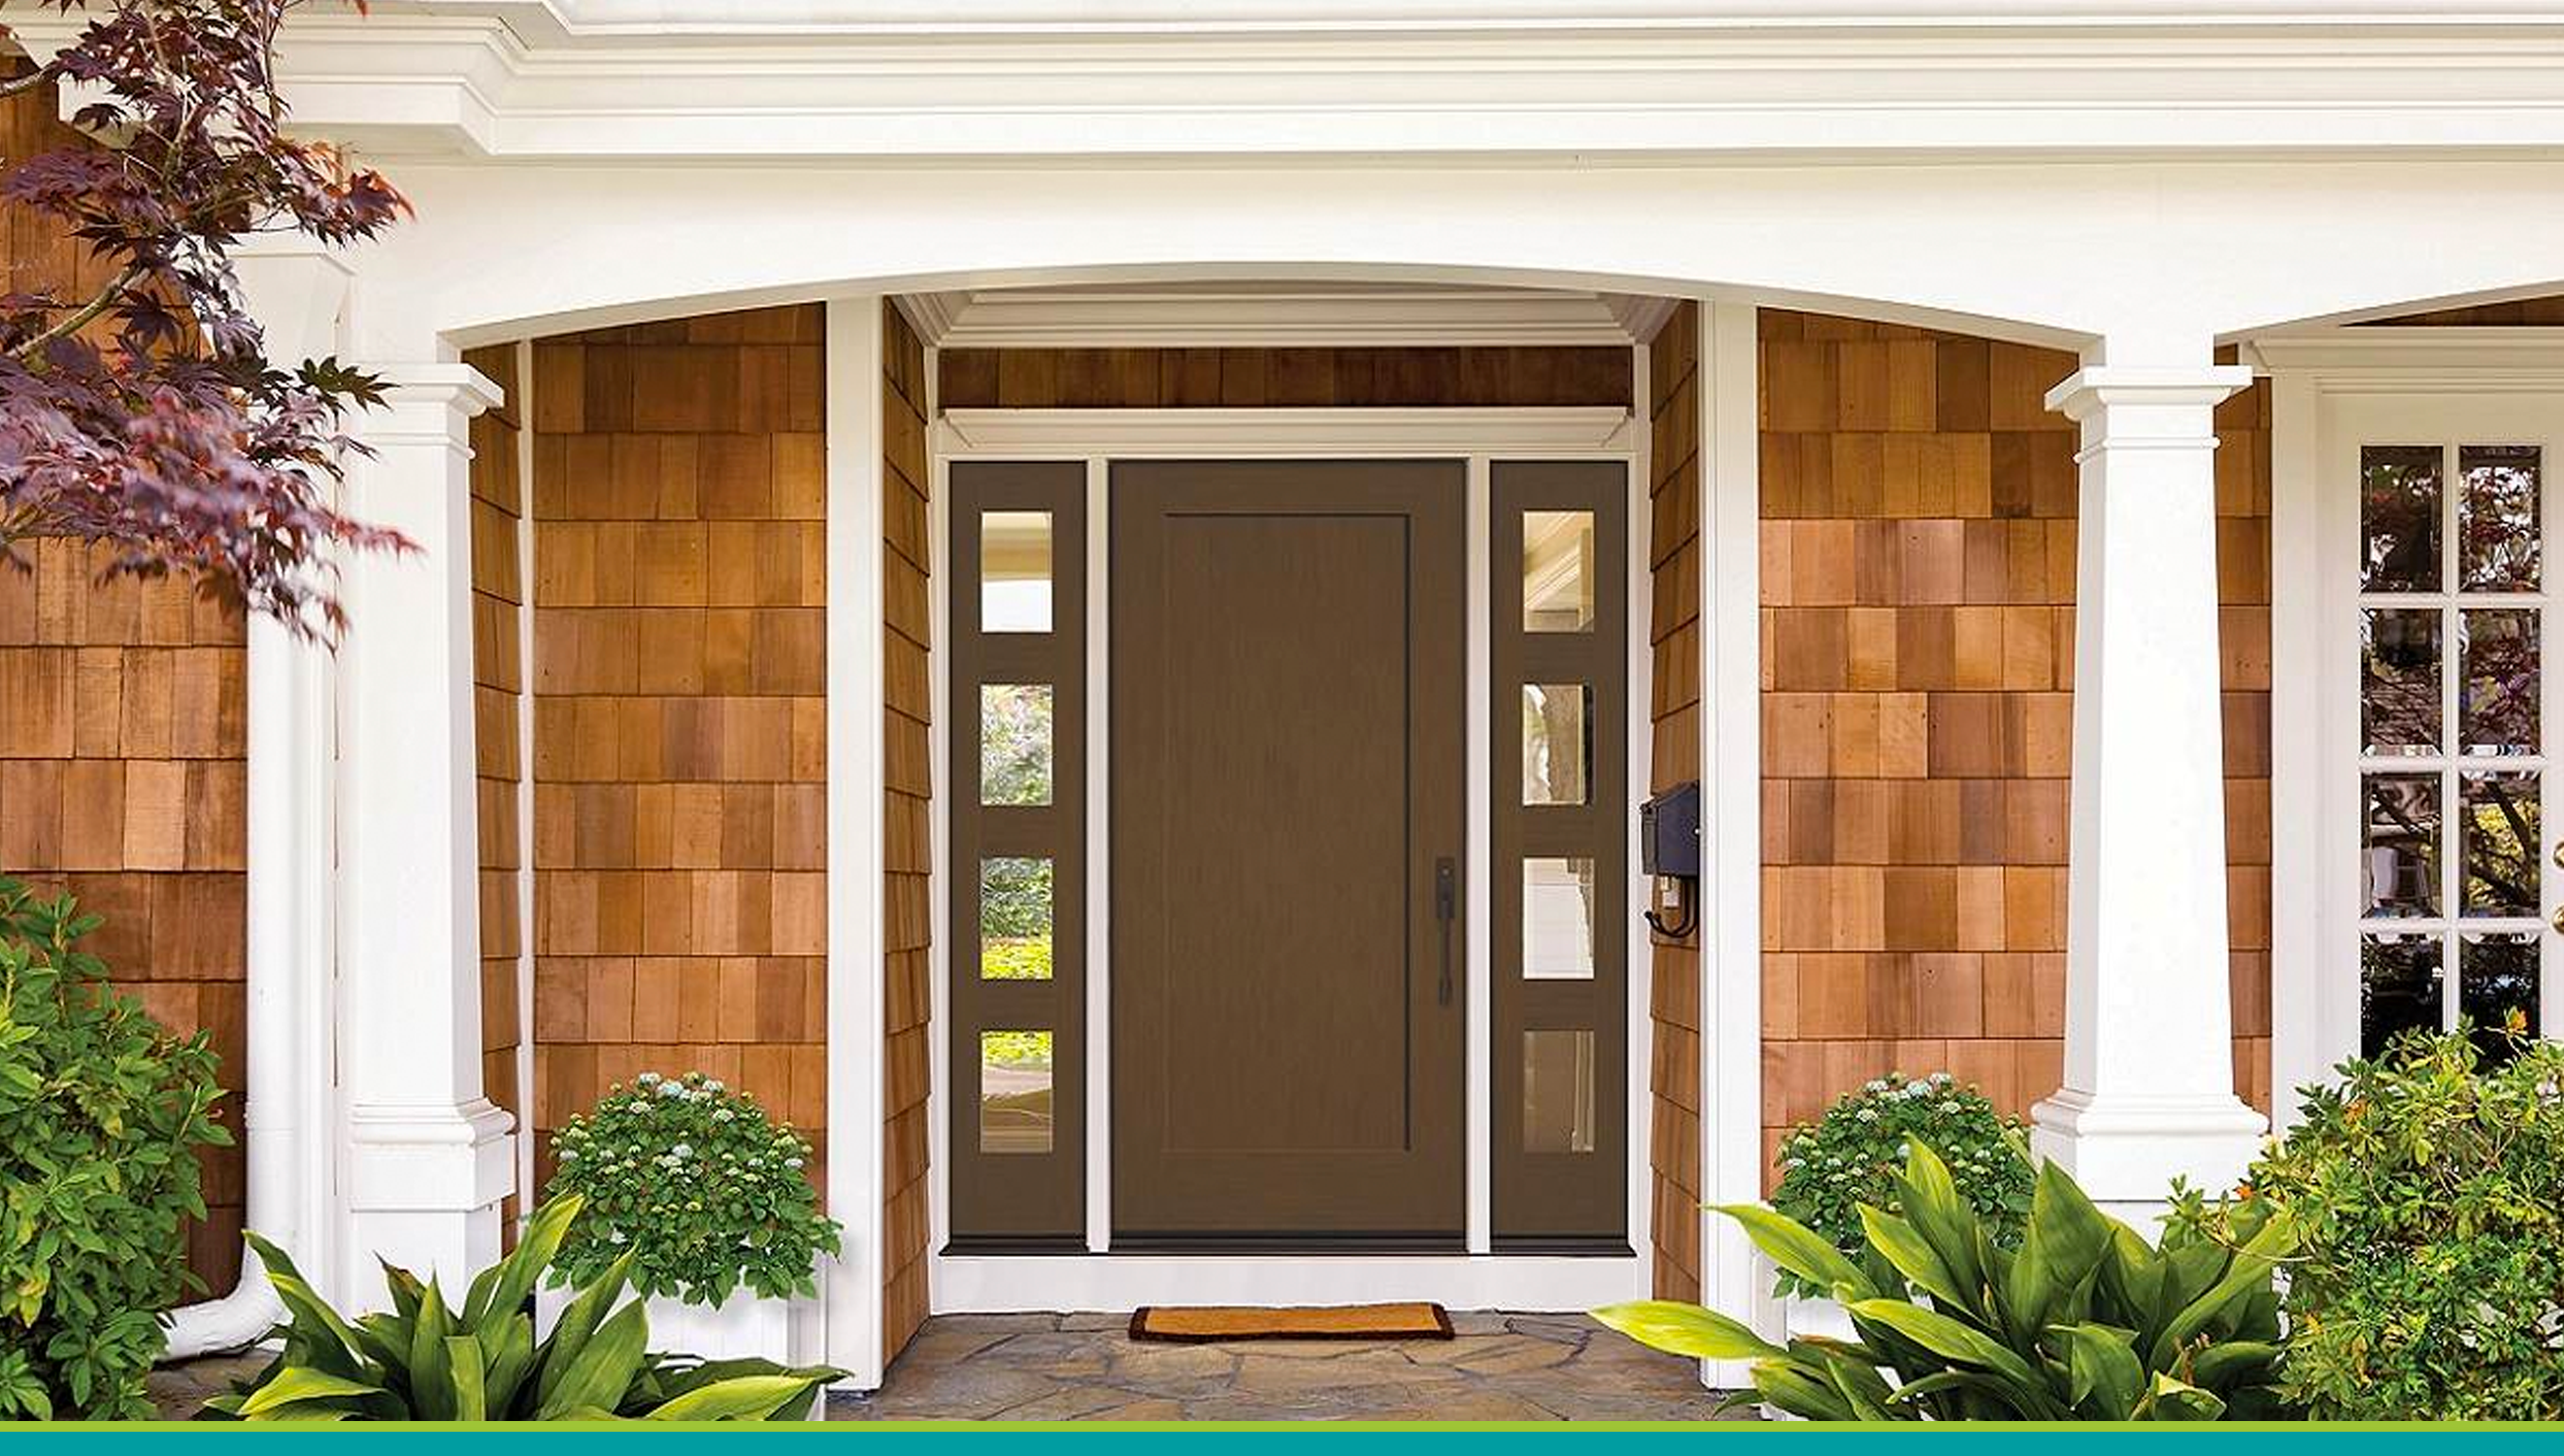 How to Choose an Entry Door - Bob Vila